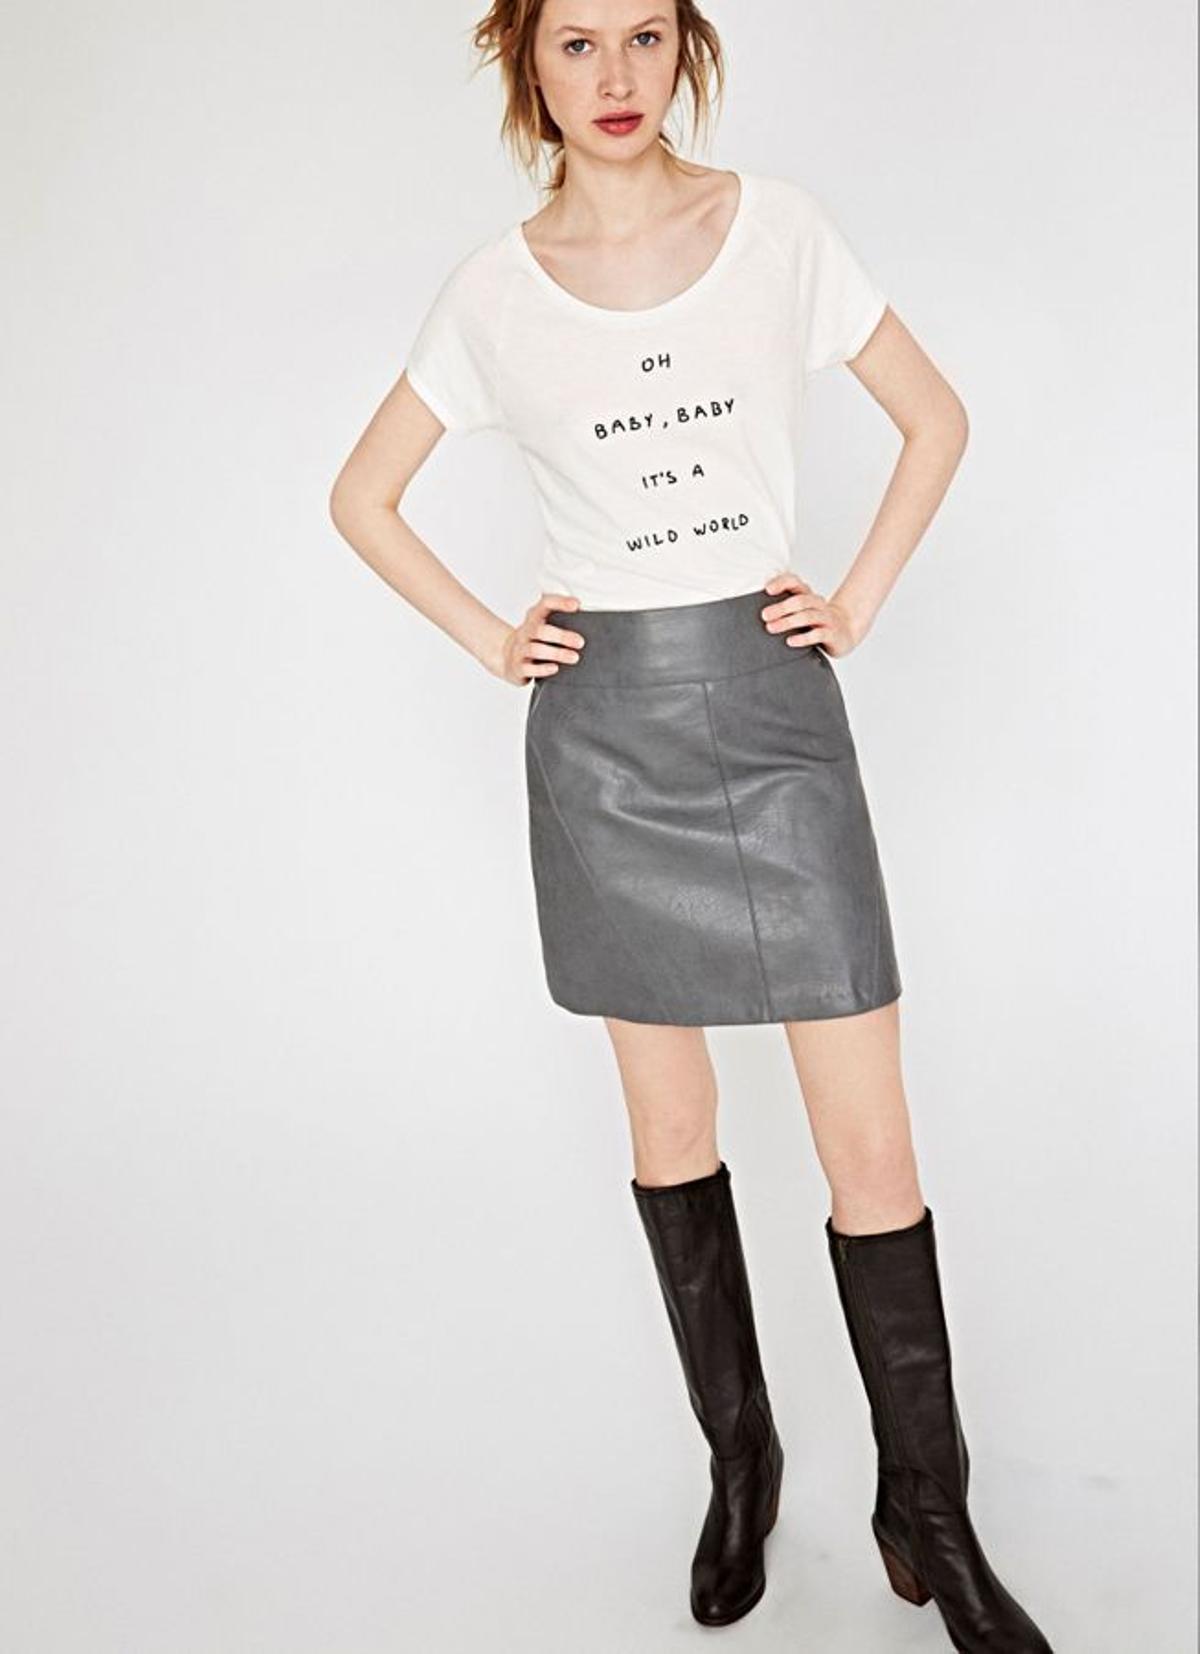 Tentaciones de nueva colección: Minifalda de Pepe Jeans